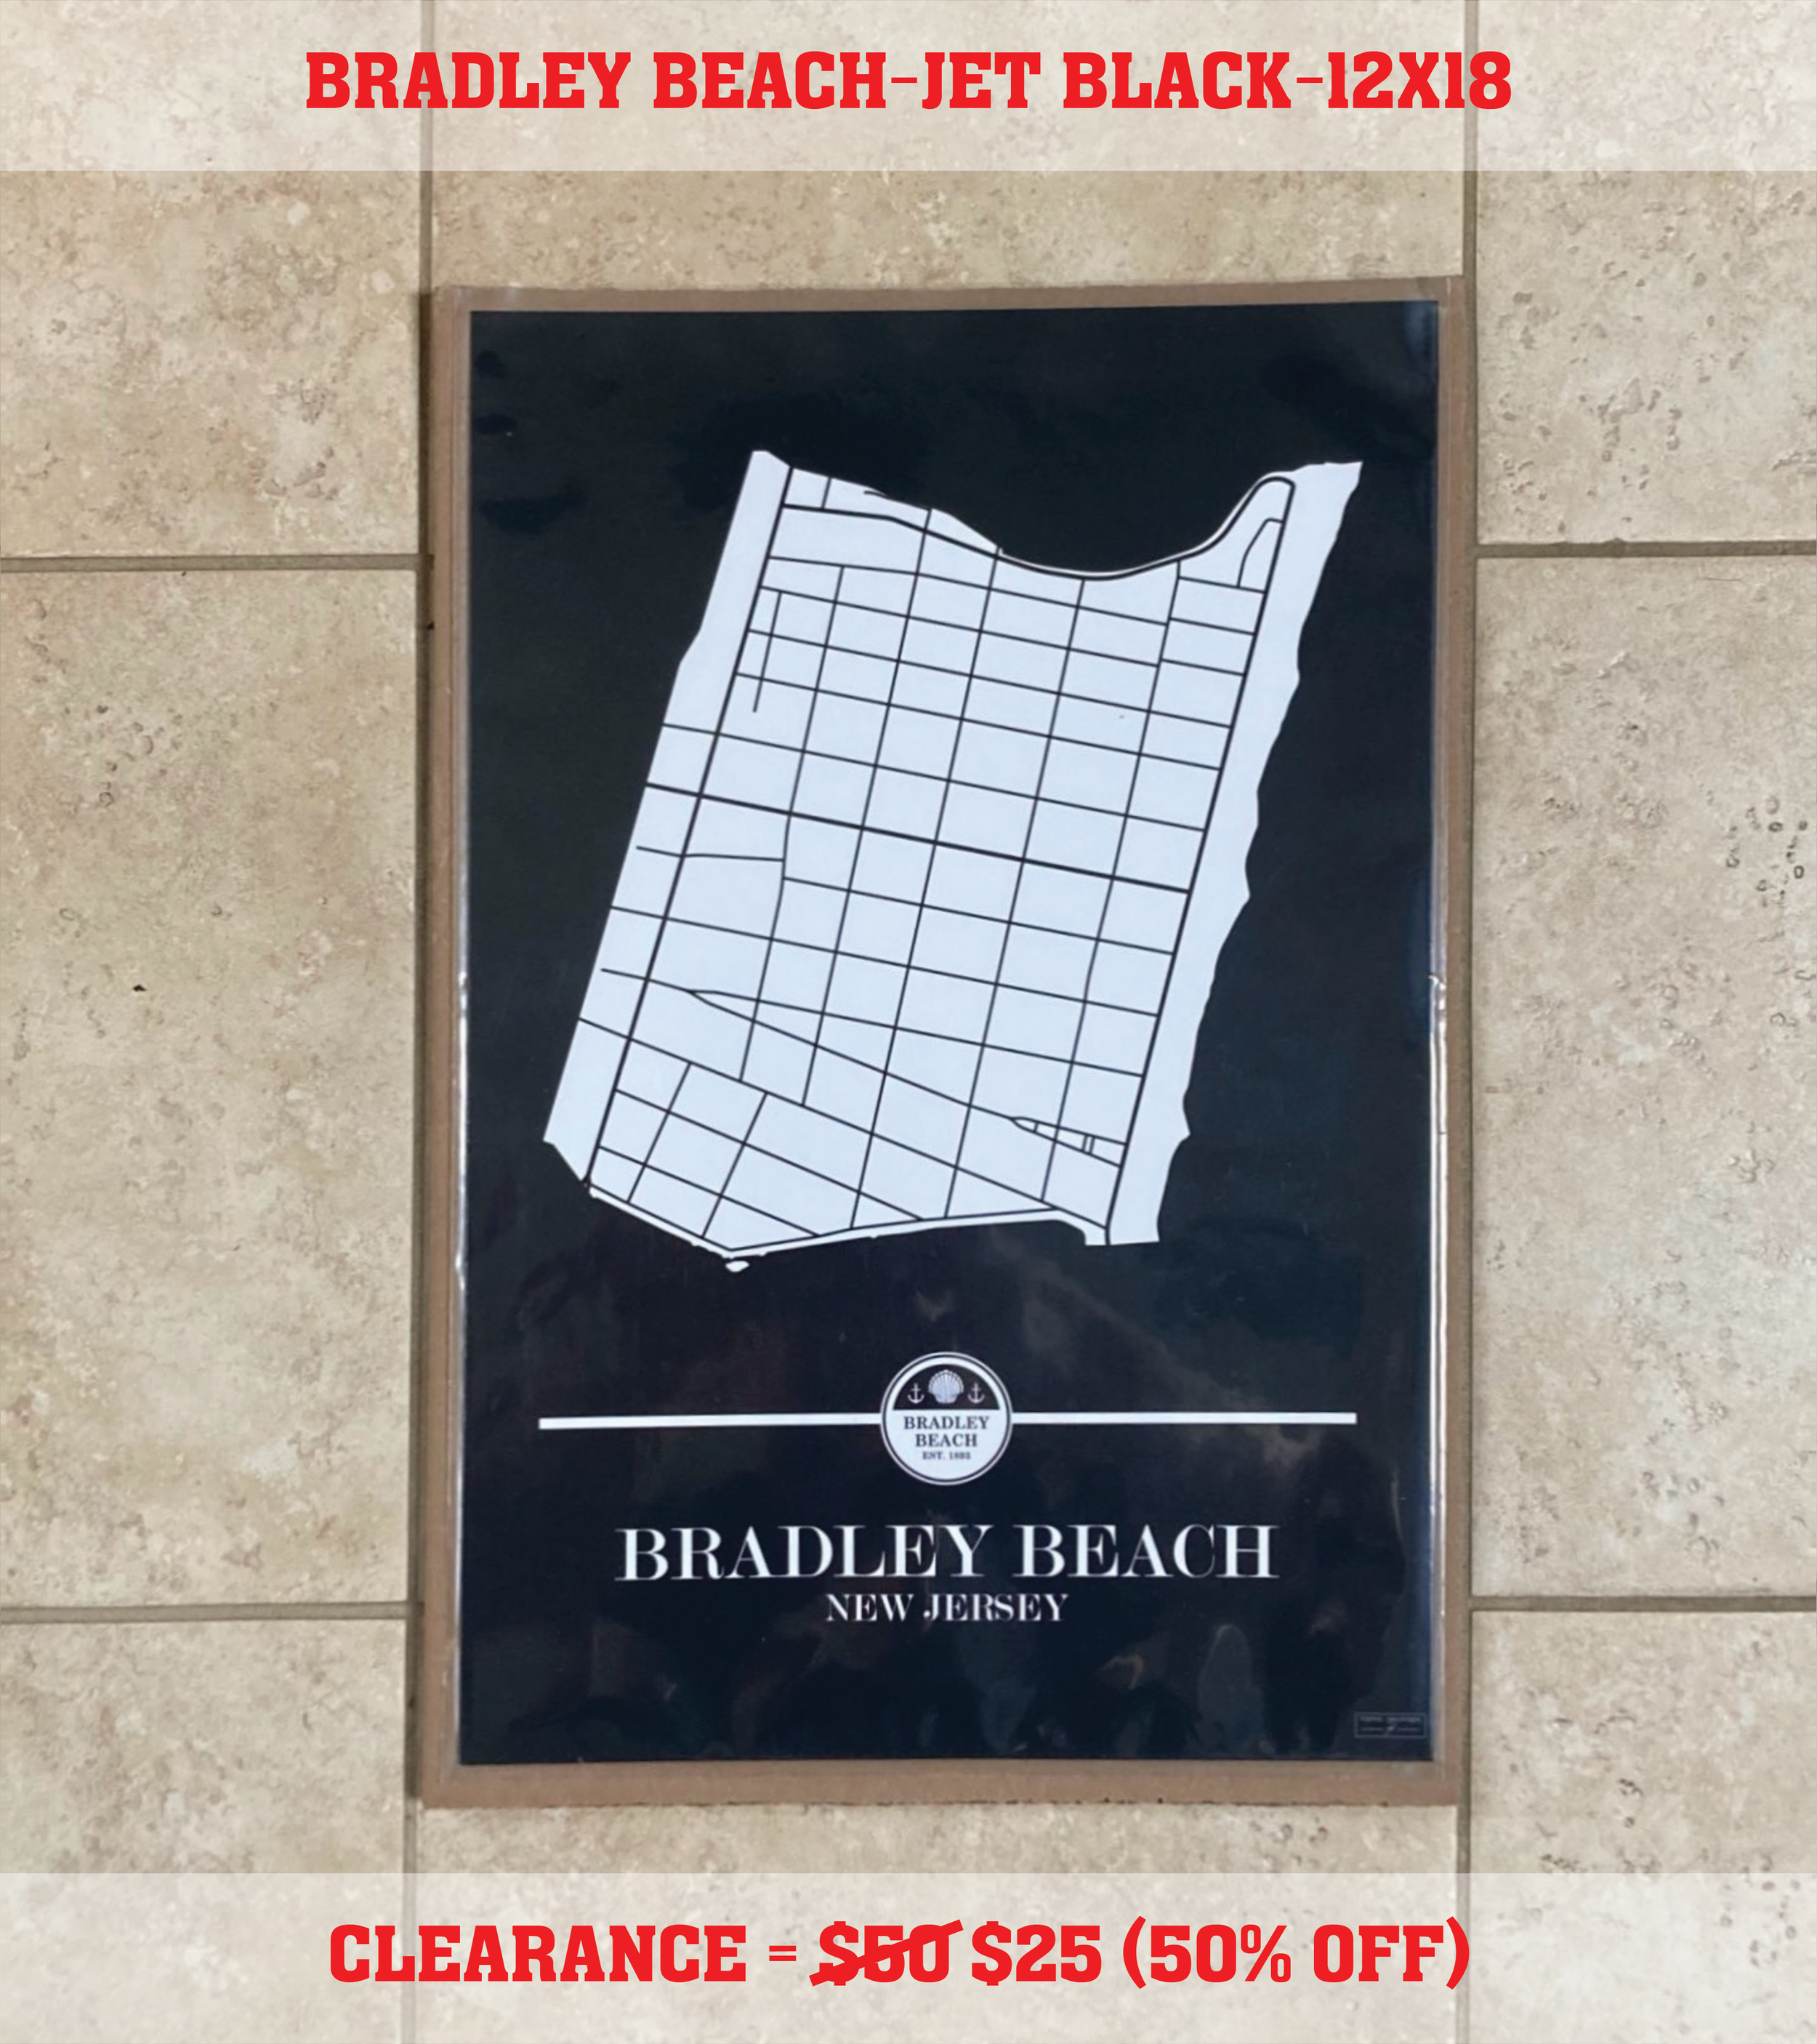 Bradley Beach (12x18) Jet Black